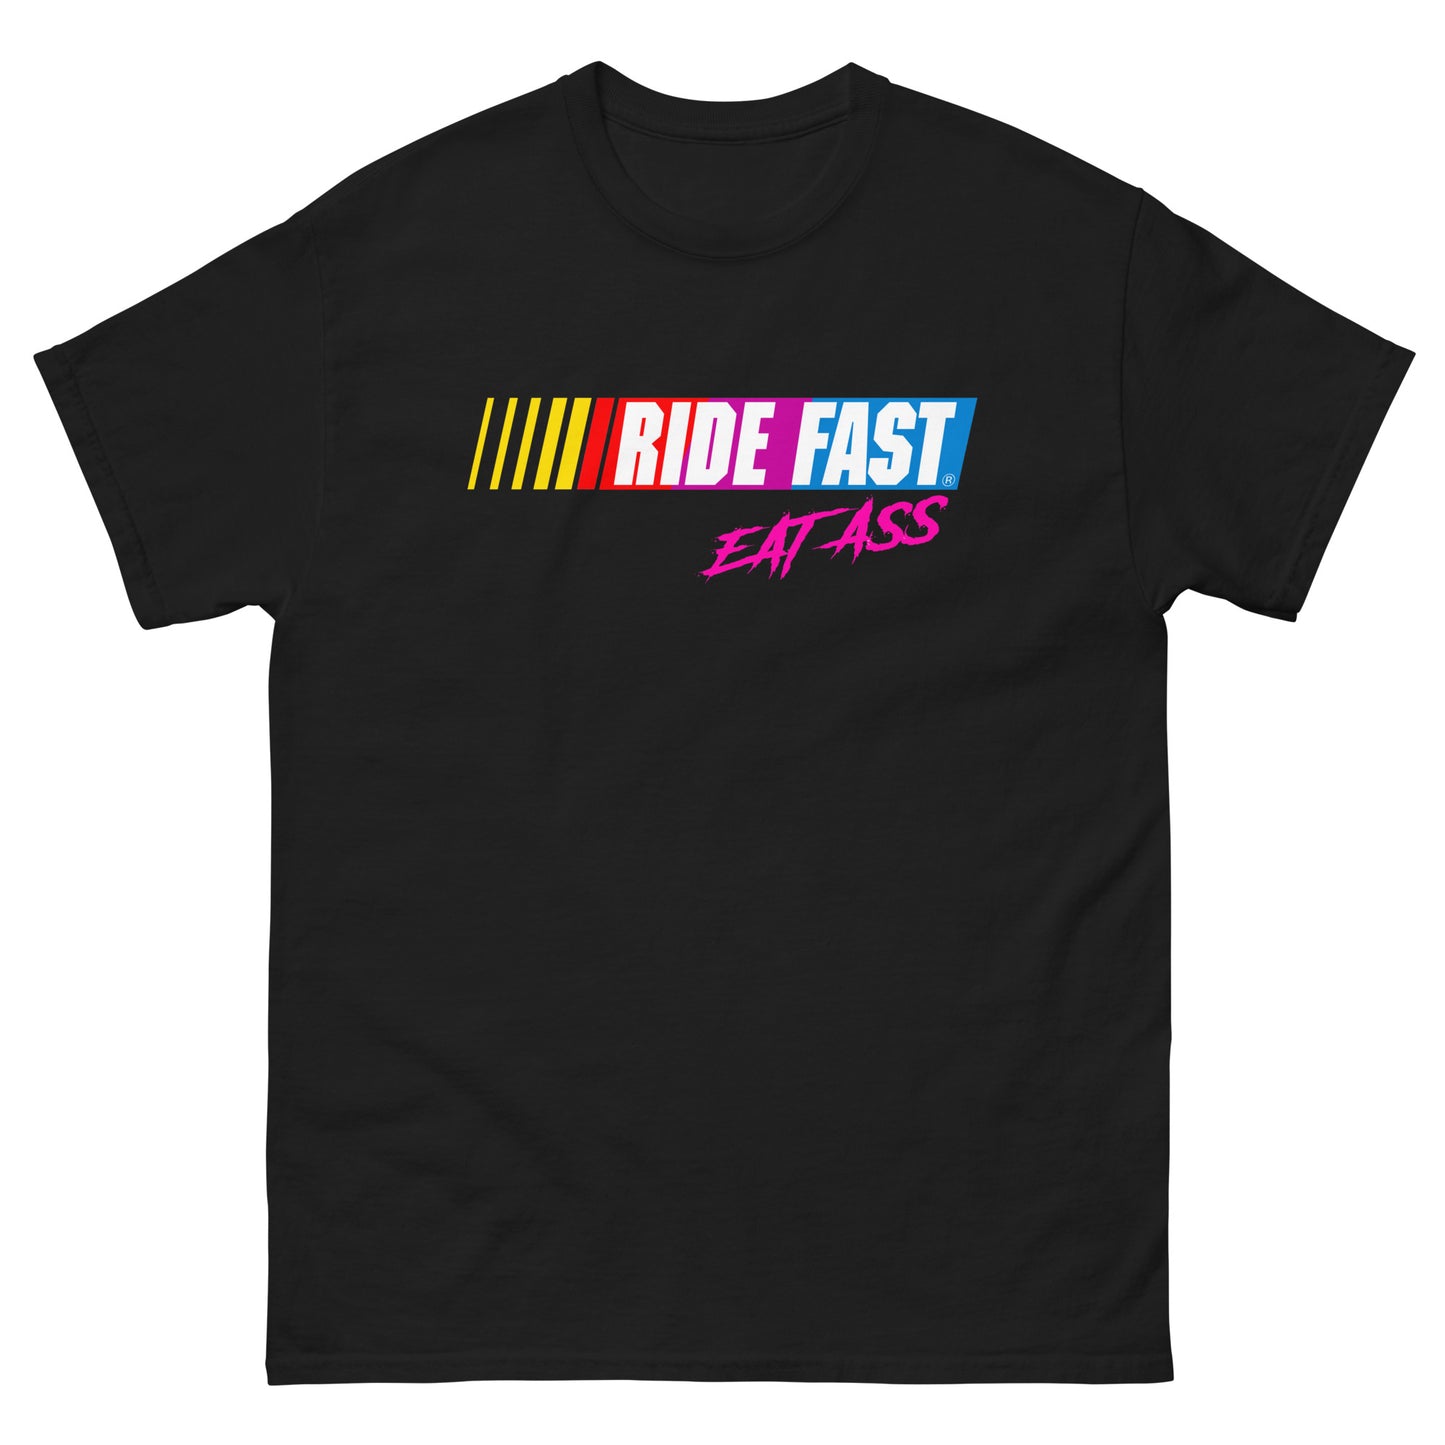 Ride Fast Eat Ass T-shirt